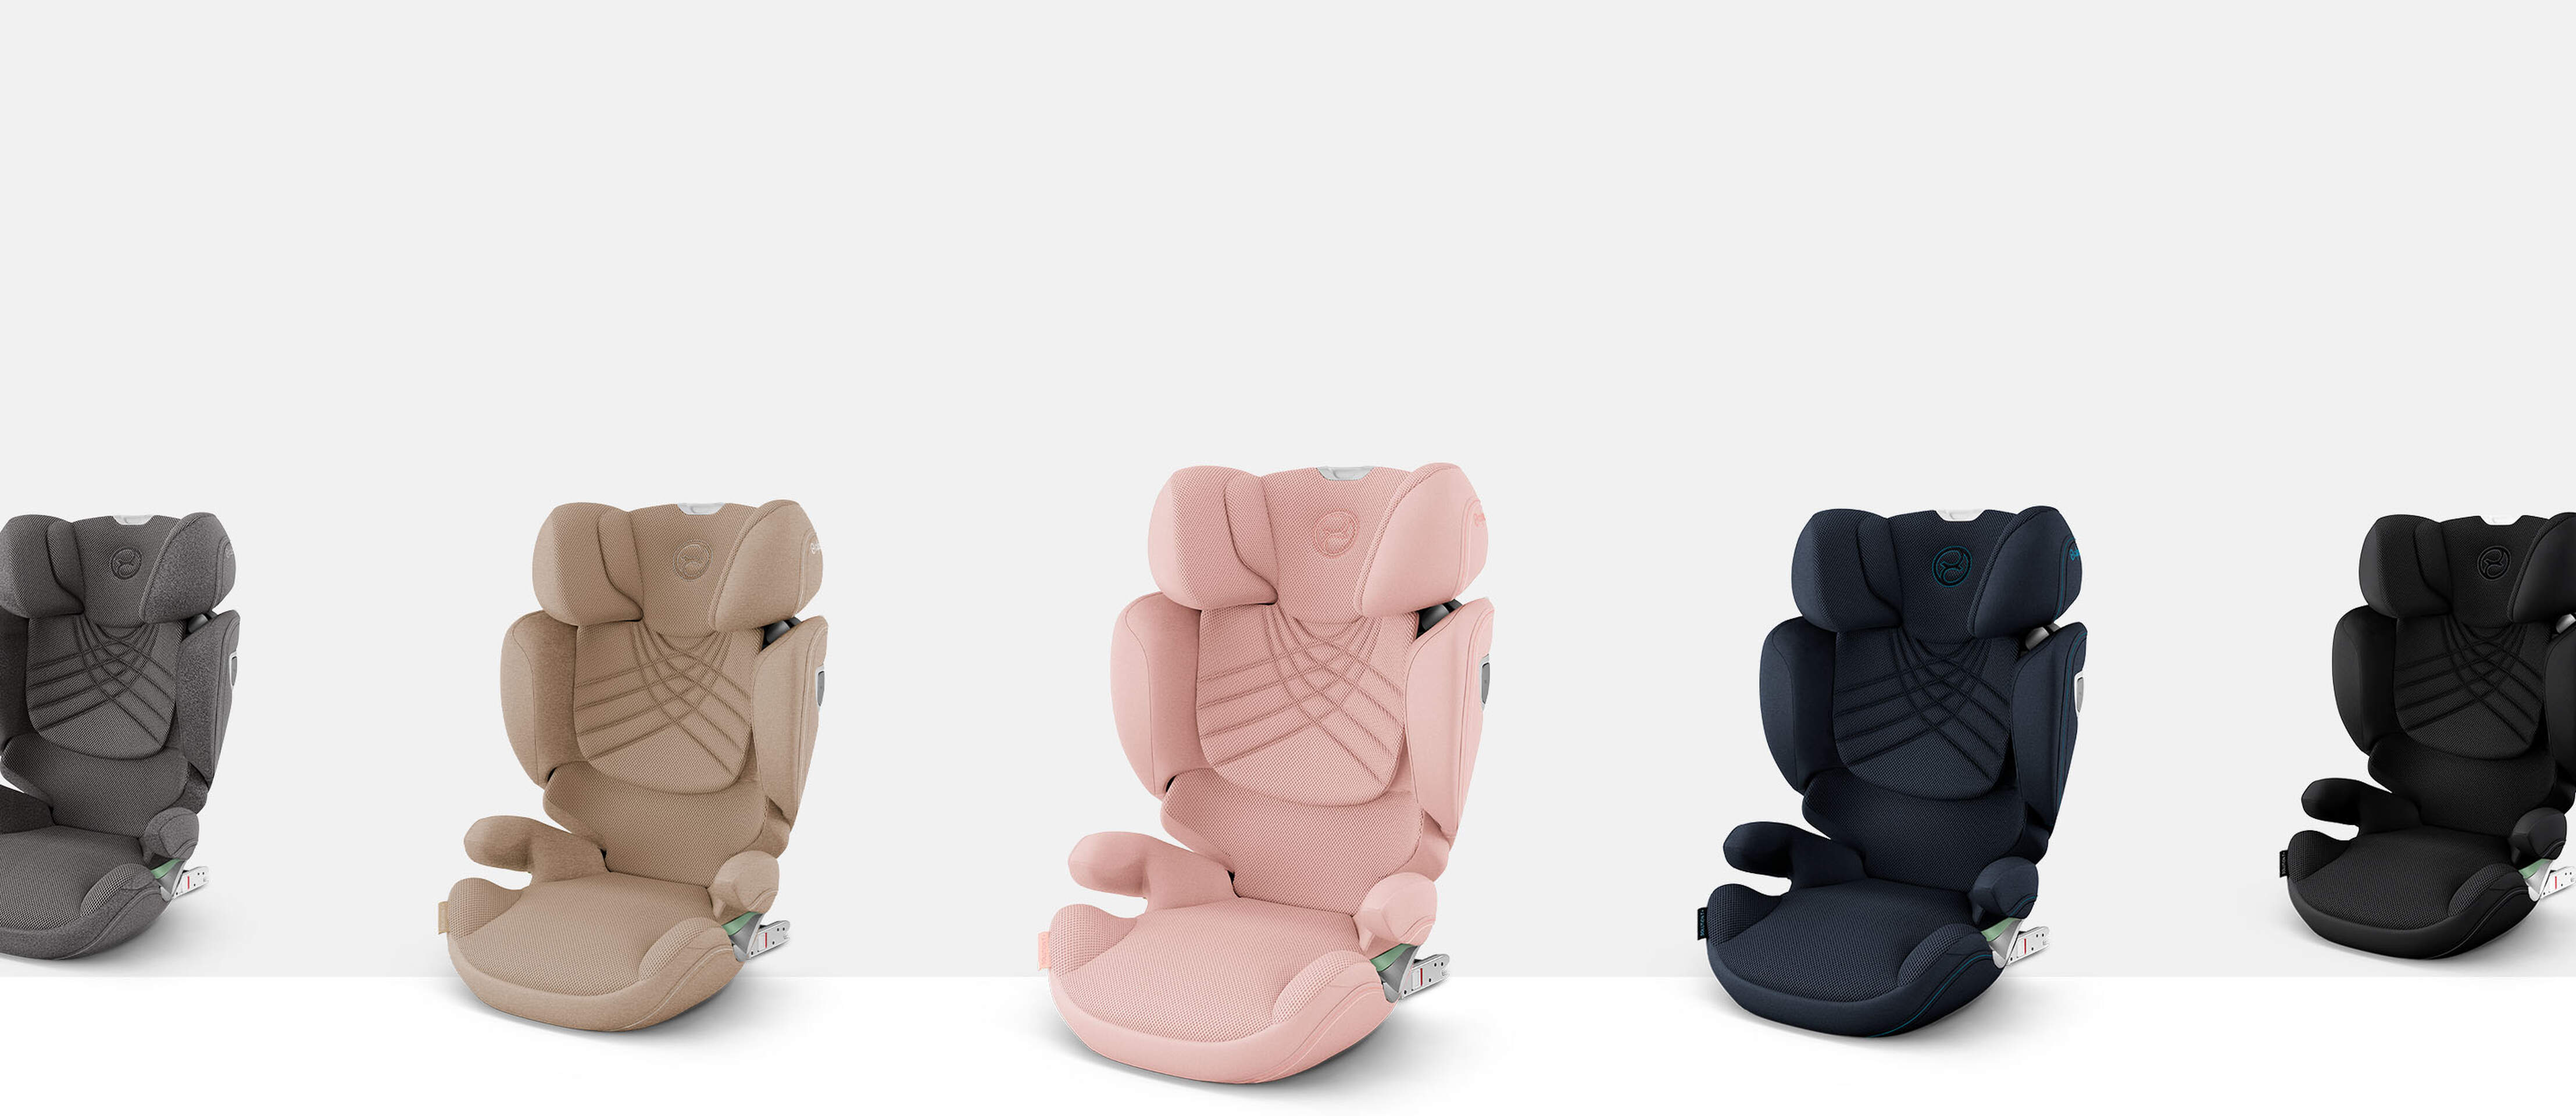 CYBEX Platinum Kindersitz Solution T i-Fix in verschiedenen Farben